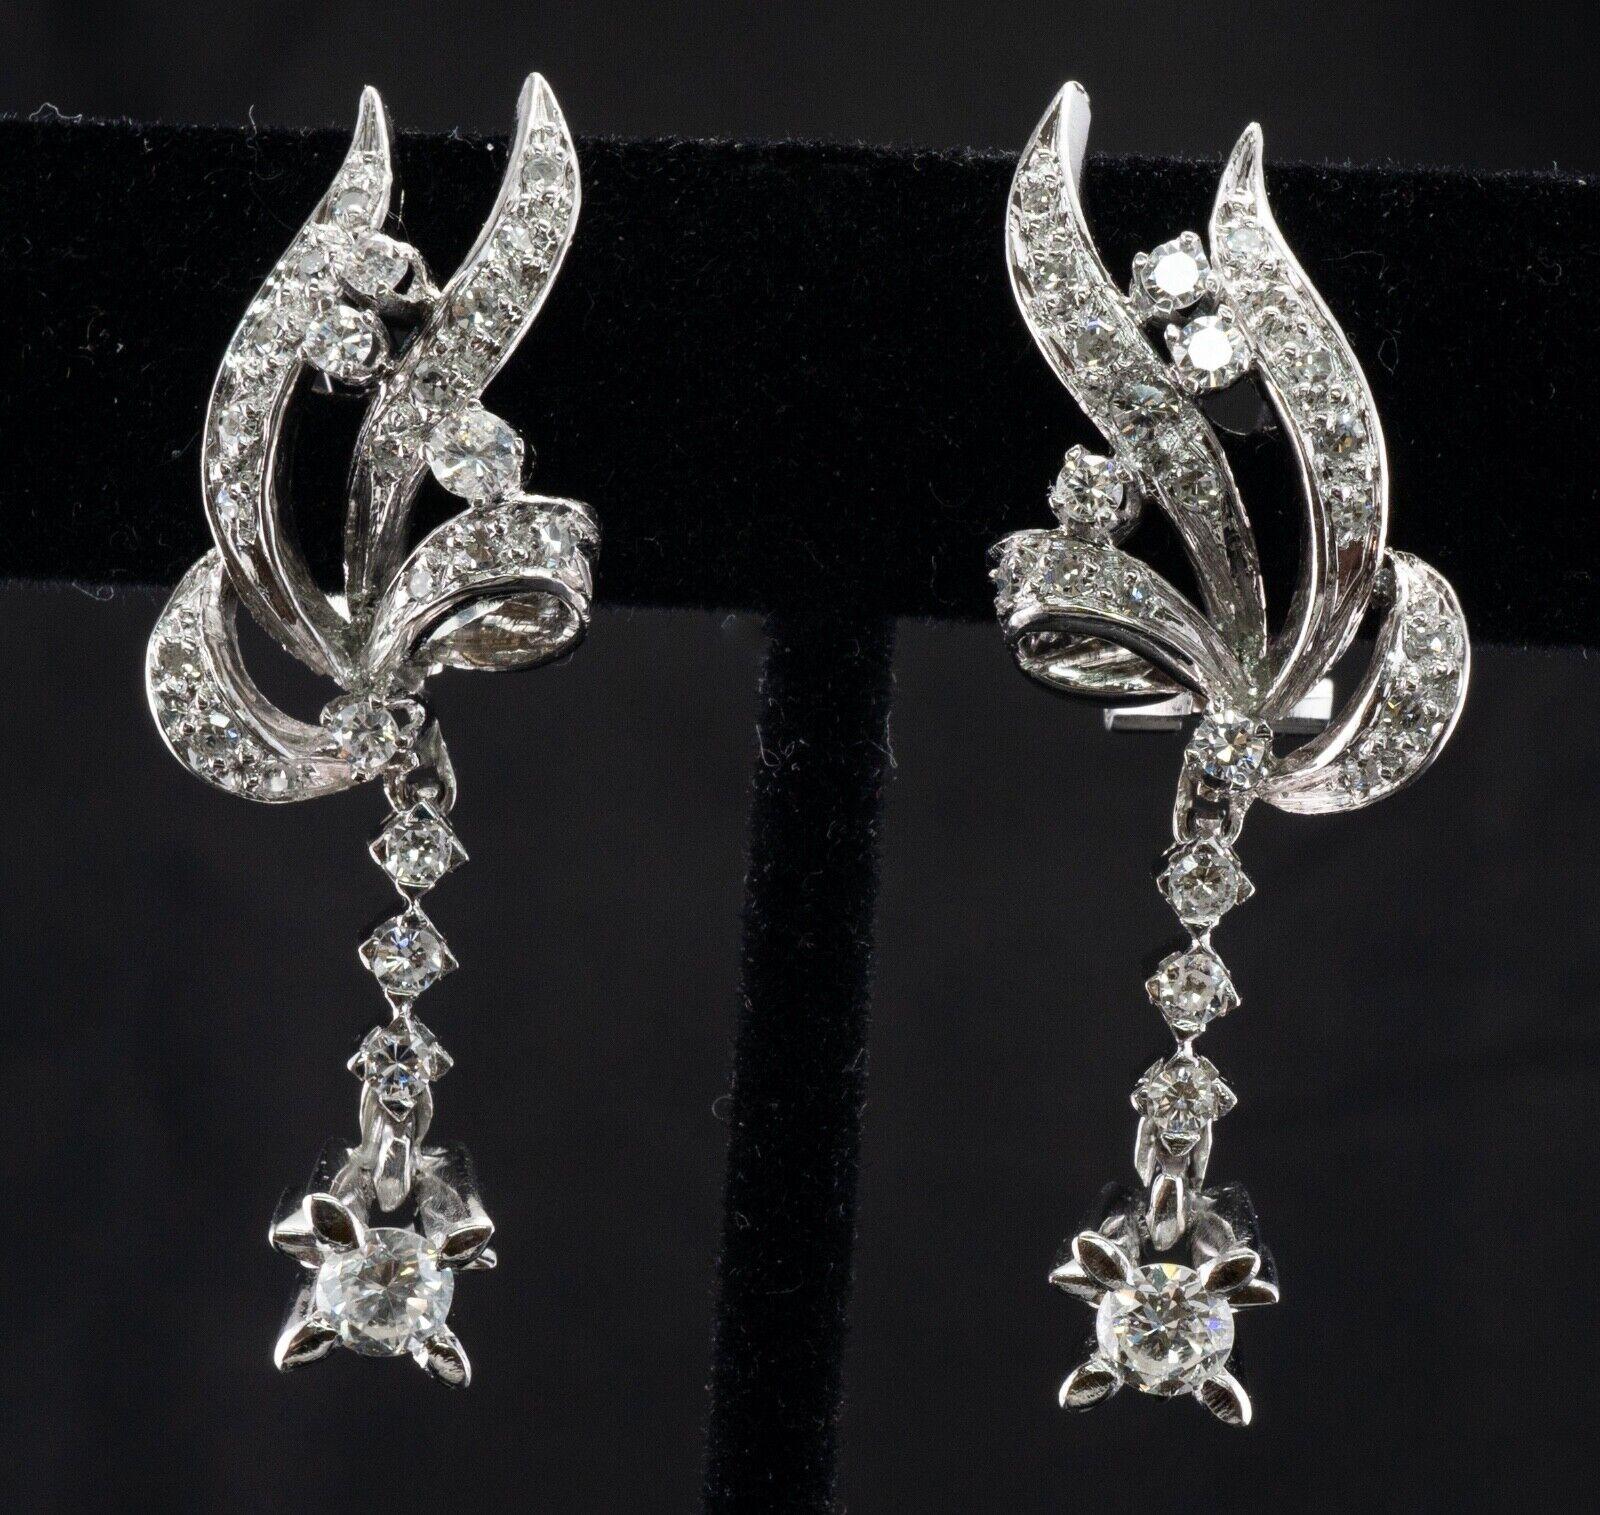 Diese wunderschönen Vintage-Ohrringe sind aus massivem 18-karätigem Weißgold gefertigt und mit natürlichen Diamanten besetzt. Der größere Diamant an der Unterseite hat 0,25 Karat (Reinheit VS2, Farbe H). Sieben Diamanten von insgesamt 0,35 Karat